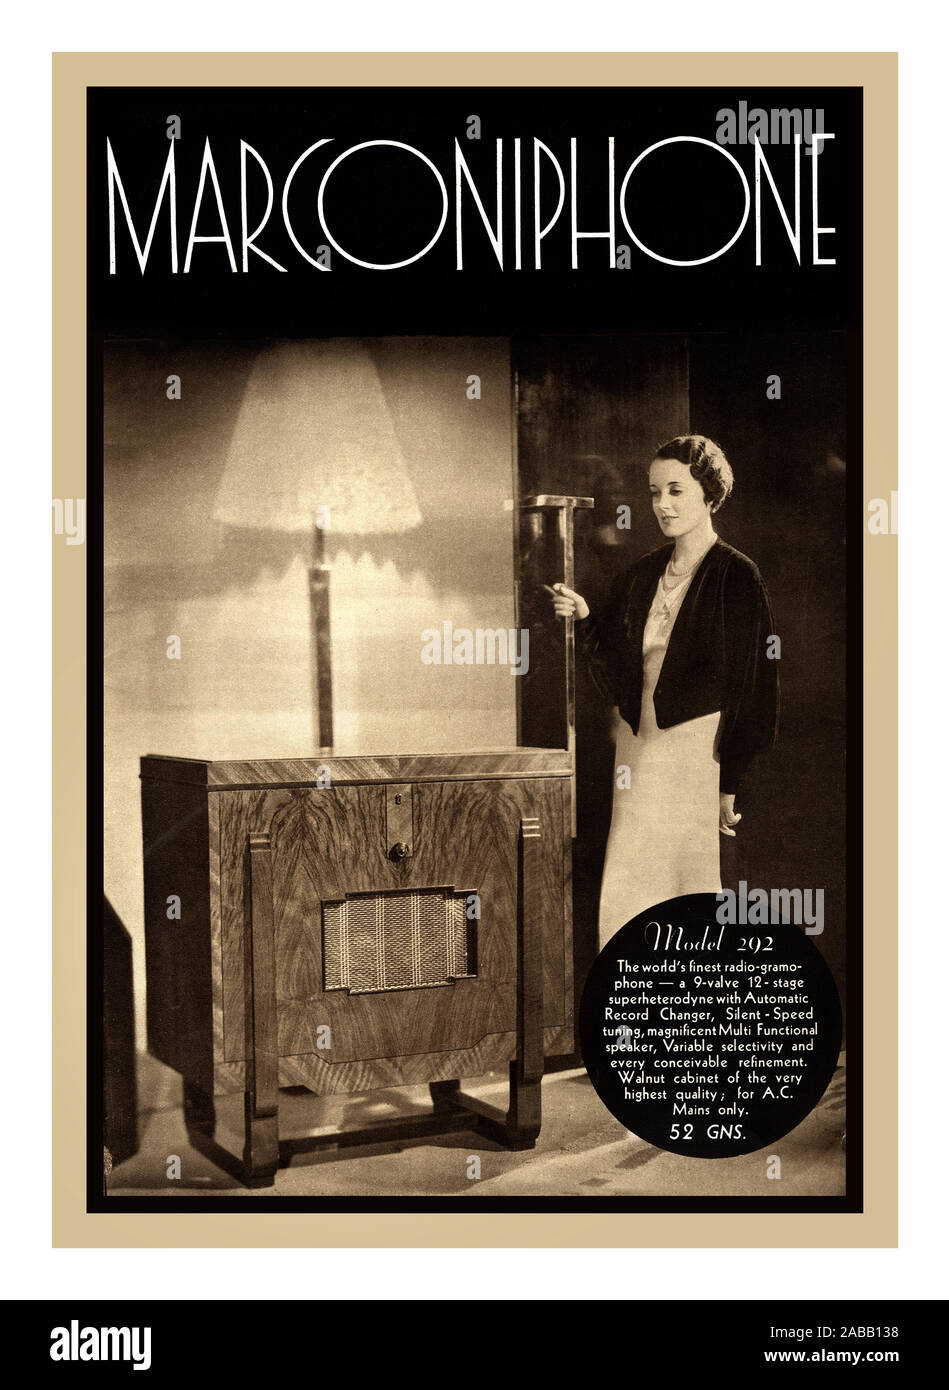 Marconi 1930 consommateur de publicité pour la commande automatique de neuf Marconiphone Radiogramme De Luxe 292 luxe premium un enregistrement radio player avec une étiquette de prix de 52 guinées (c) 3 000 € RECORD PLAYER MARCONIPHONE VINTAGE MARCONI RADIO MW + LW CABINET STYLET GRAMOPHONE Banque D'Images